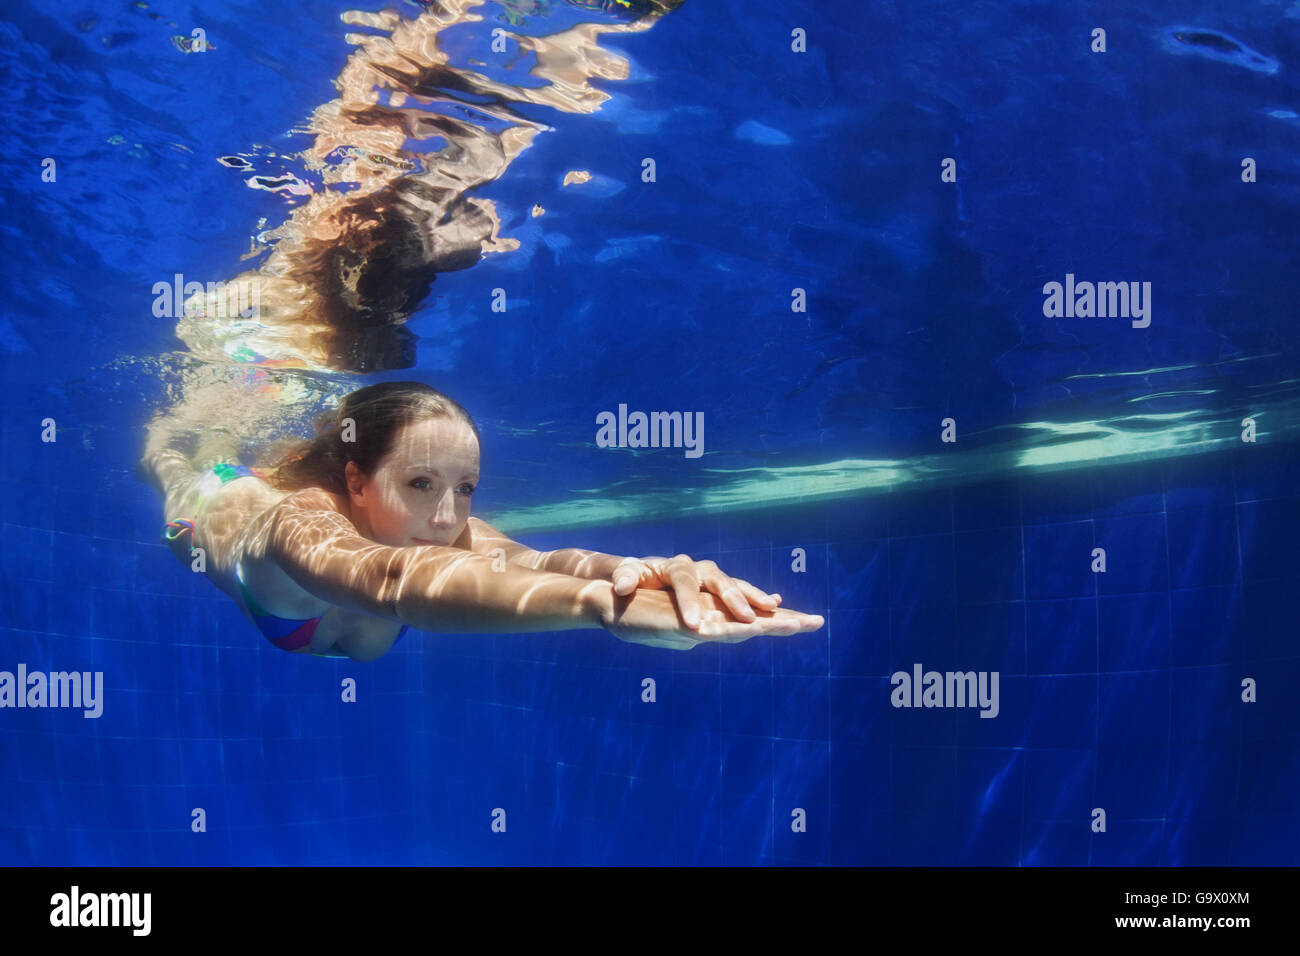 Schöne junge Frau Tauchgang unter Wasser mit Spaß von Pool zu Pool blau. Gesunden, aktiven Lebensstil, Wasseraktivität Menschen sport Stockfoto